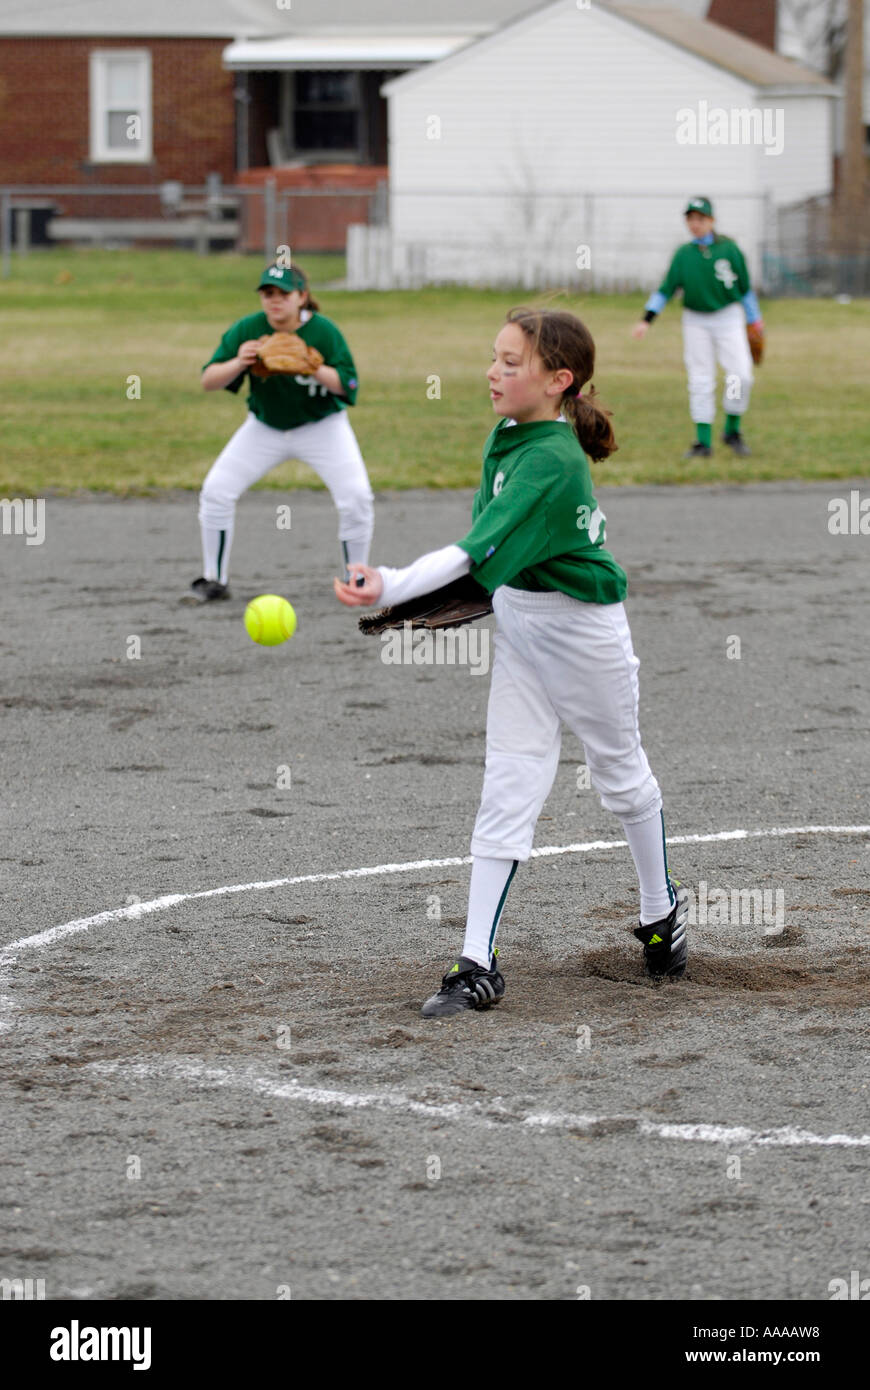 Junge Mädchen spielen softball Stockfoto